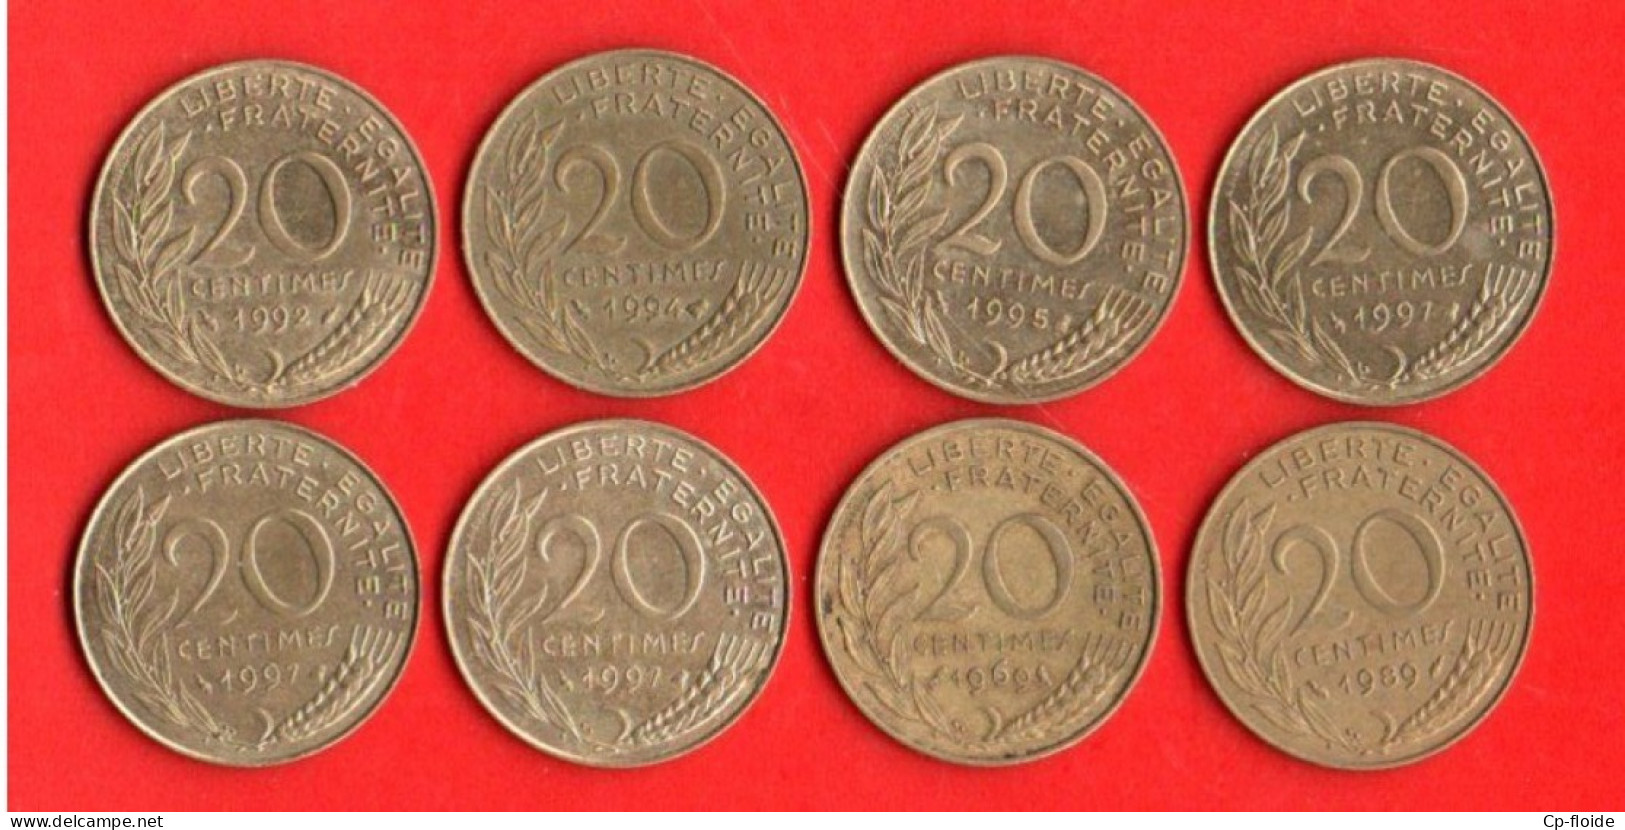 FRANCE 20 CENTIMES. MARIANNE LAGRIFFOUL. 1997, 1992, 1994, 1997, 1995, 1969, 1997, 1989. LOT DE 8 PIÈCES - Réf. N°282B - - 20 Centimes